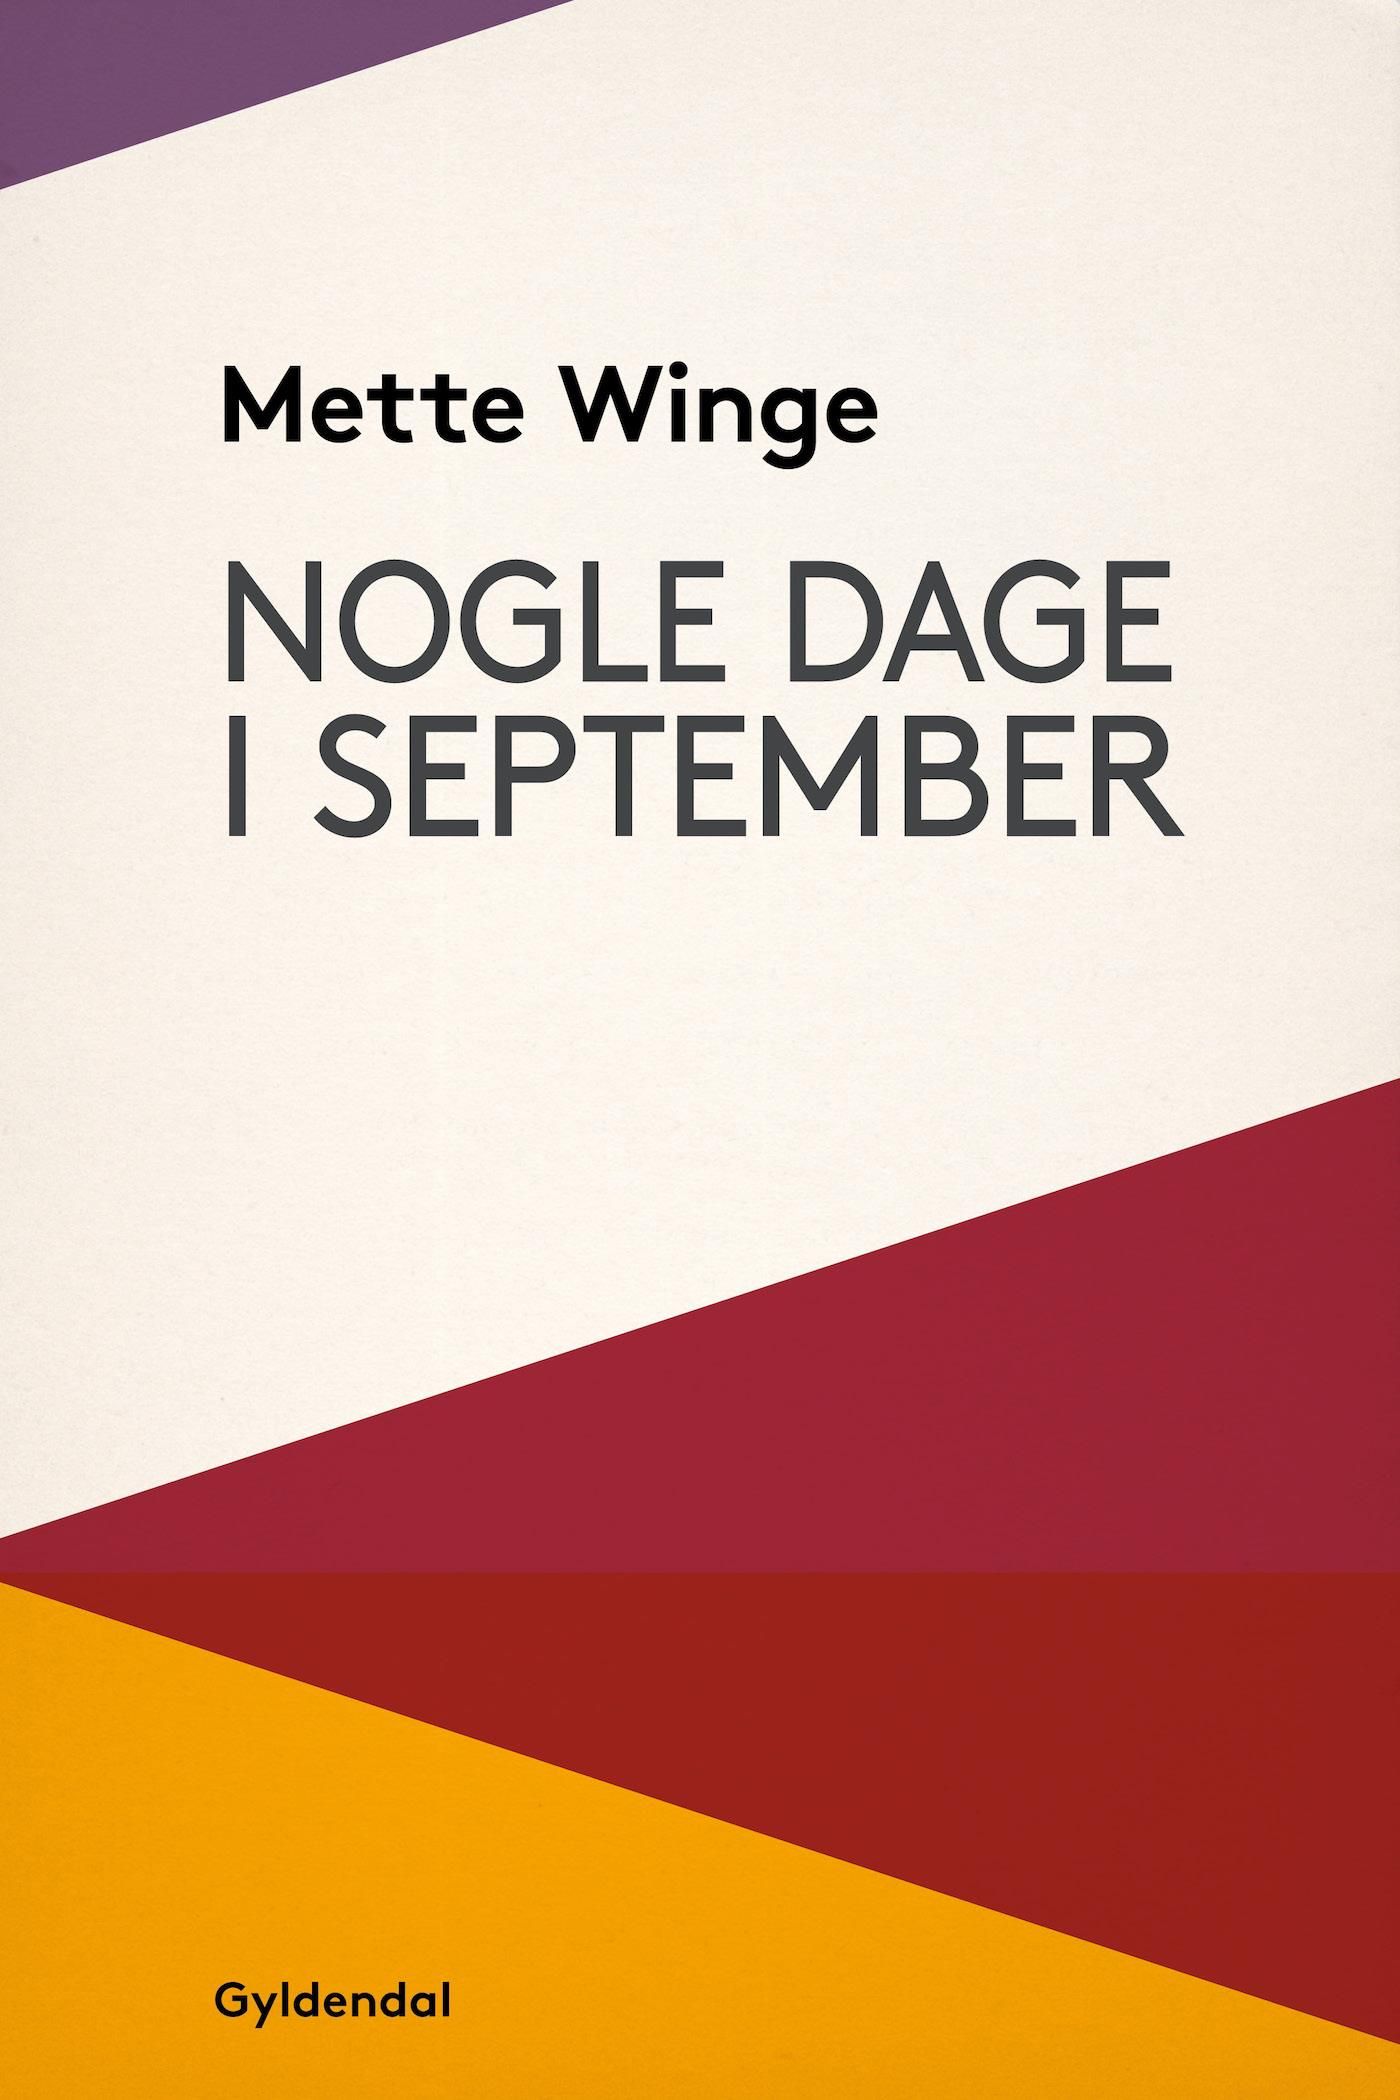 Nogle dage i september, e-bok av Mette Winge